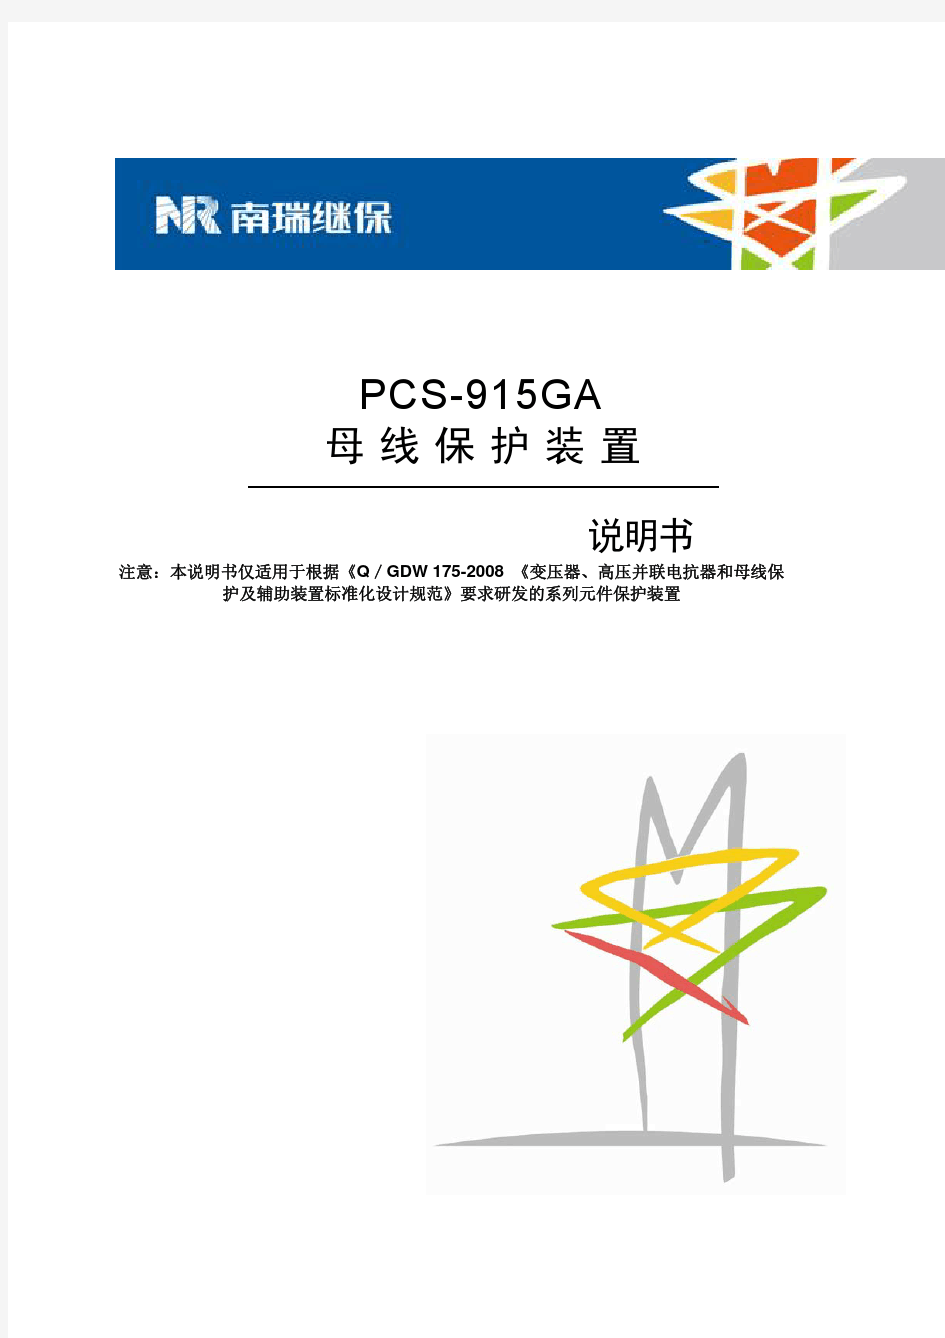 PCS-915GA_X_说明书_国内中文_标准版_X_R1.03_(ZL_YJBH5311.1212)